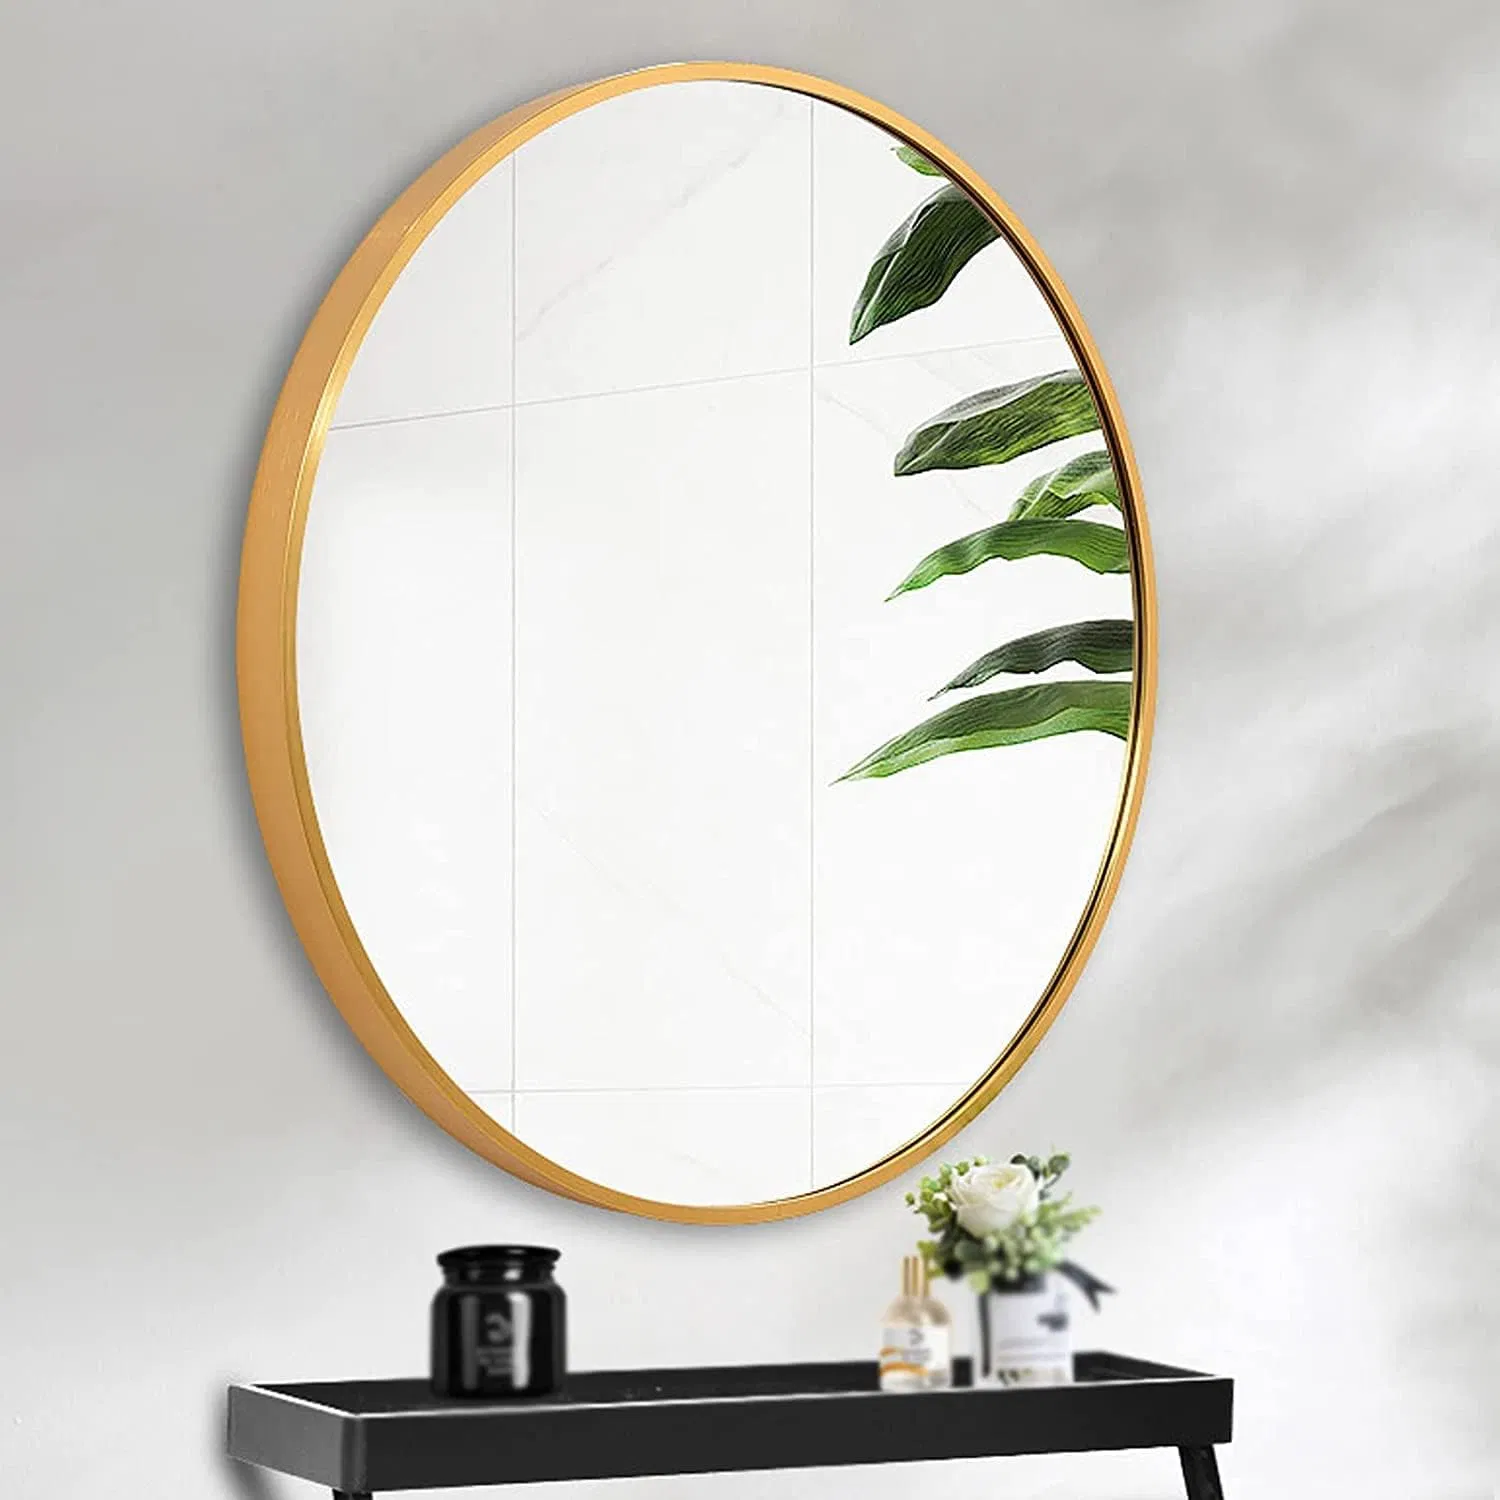 مربع الديكور الذهبي مرآة مستديرة سوداء مستطيلة الشكل أرضية دائمة الحمام المعدني كامل الطول مكياج مرآة تعليق الجدار ذات إطار من الألومنيوم